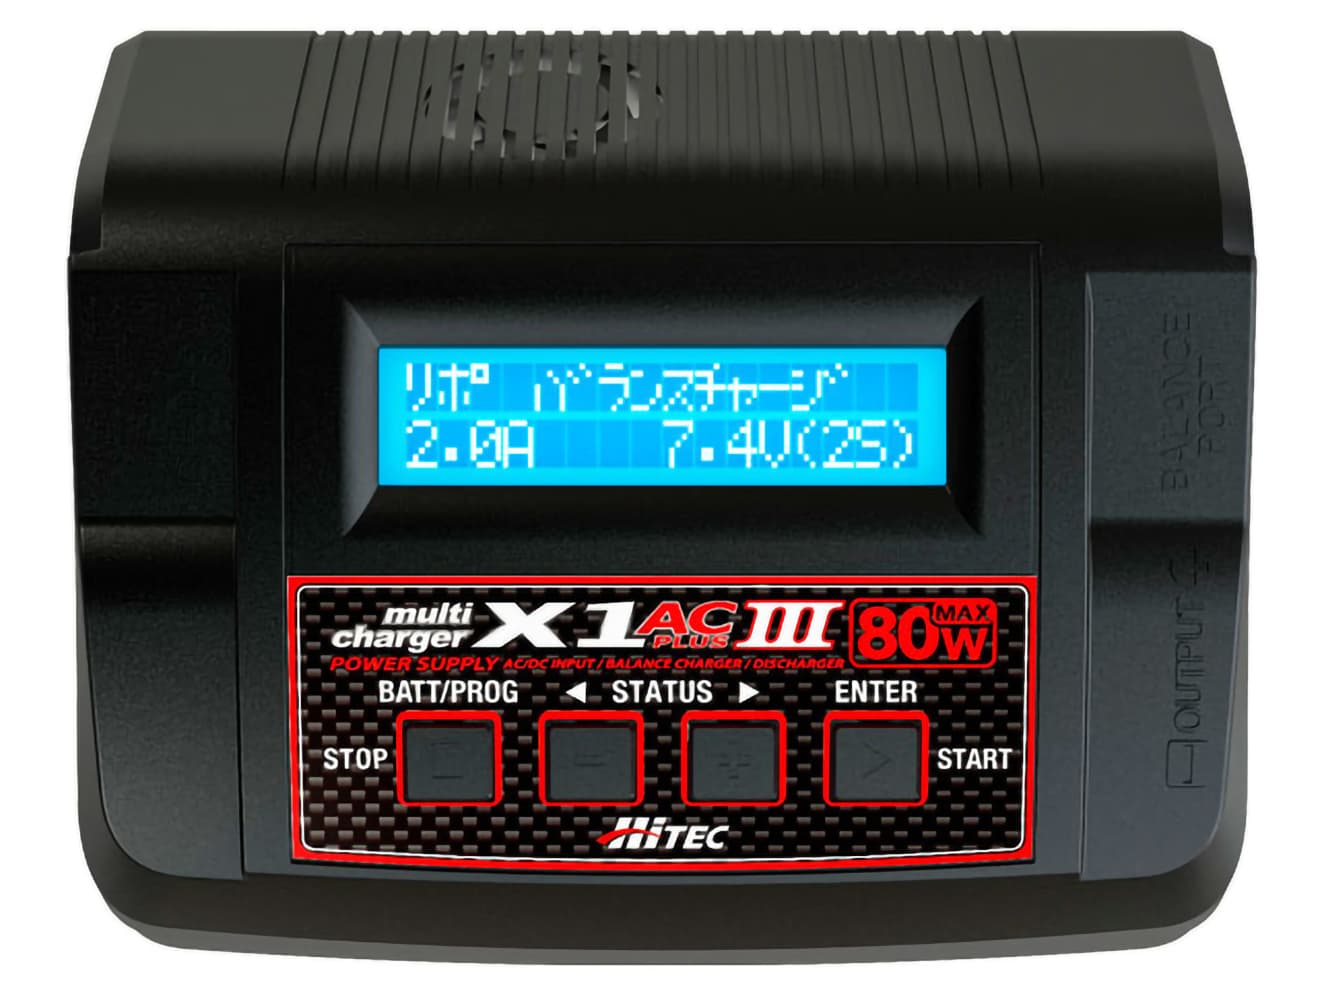 ハイテック multi charger X1 AC PLUSⅢ